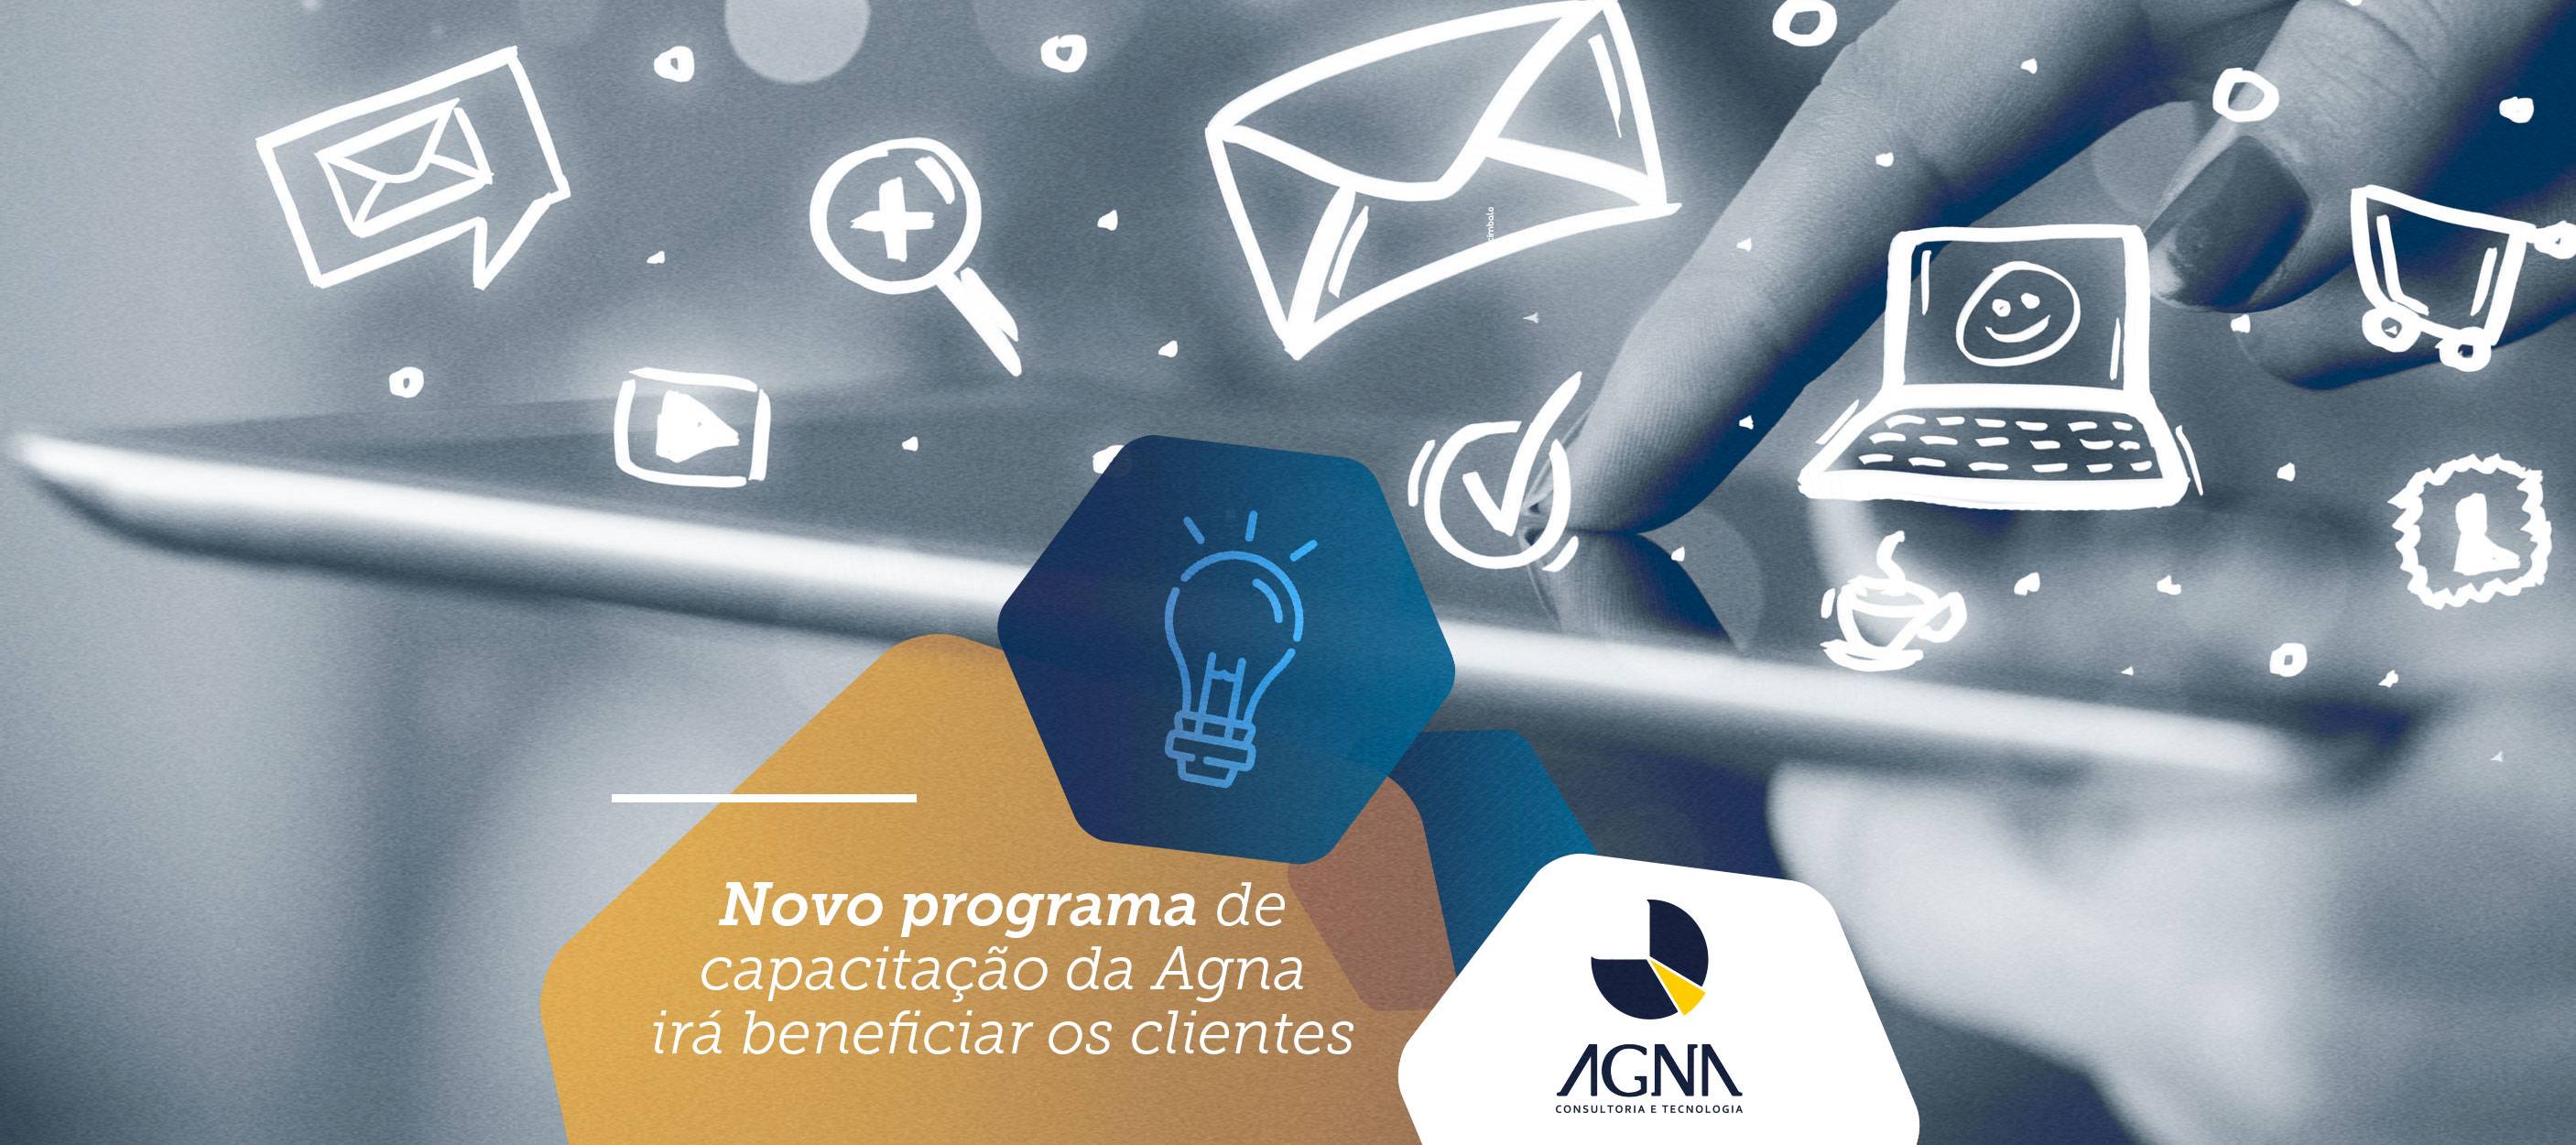 Novo programa de capacitação da Agna irá beneficiar os clientes